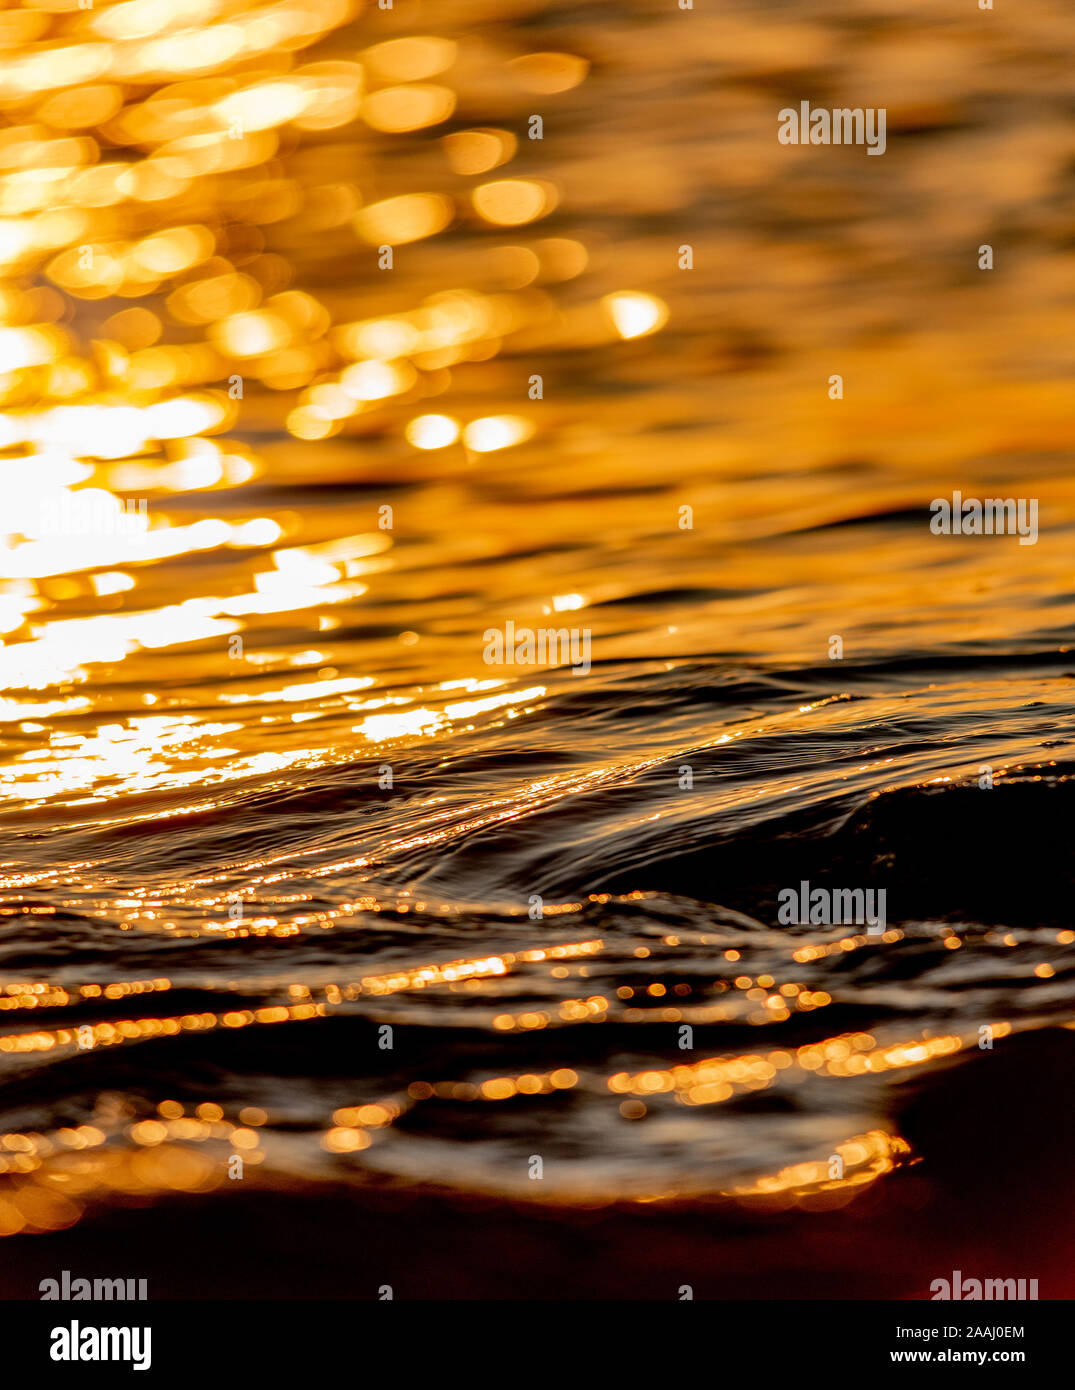 Close-up des vagues de la mer et le mouvement de l'eau sur la surface de la mer dans la lumière dorée. Reflets de lumière sur l'eau. Banque D'Images